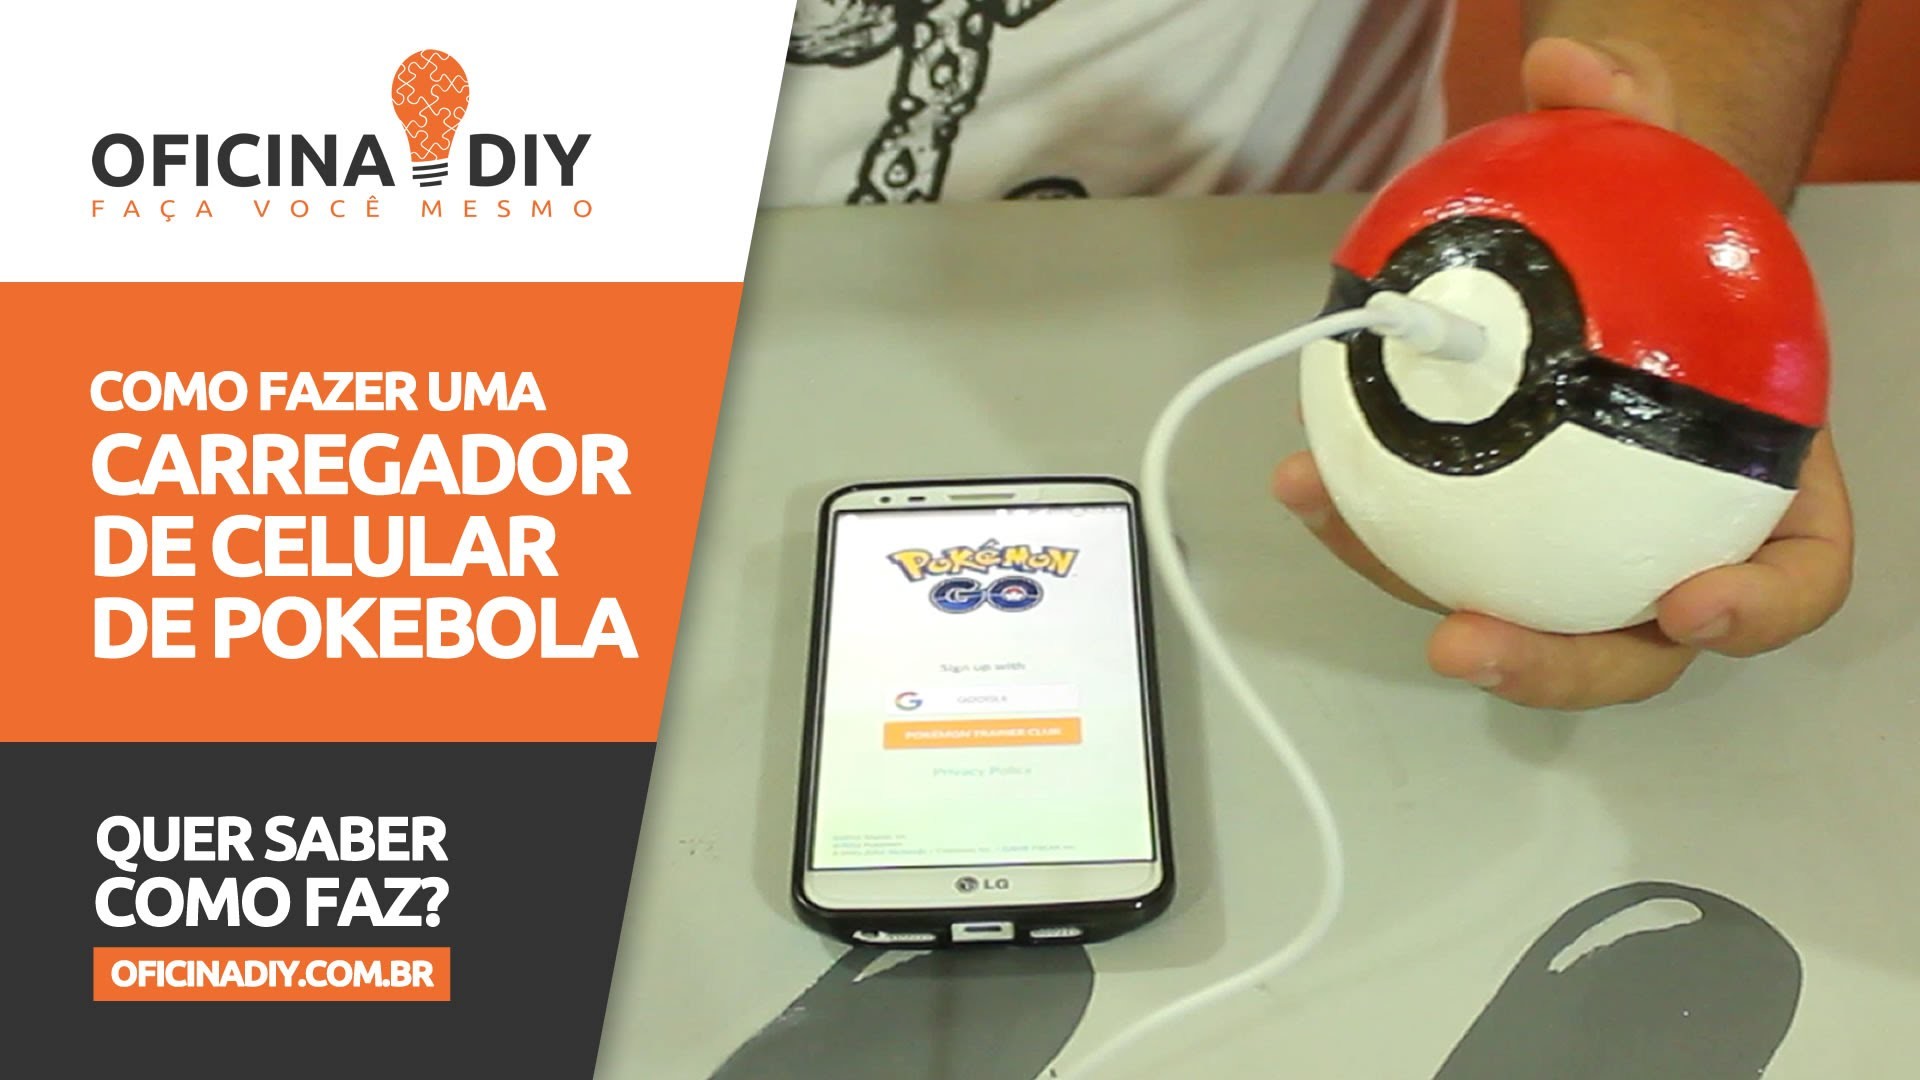 Carregador de Celular de Pokébola - Pokémon Go | Oficina DIY #40